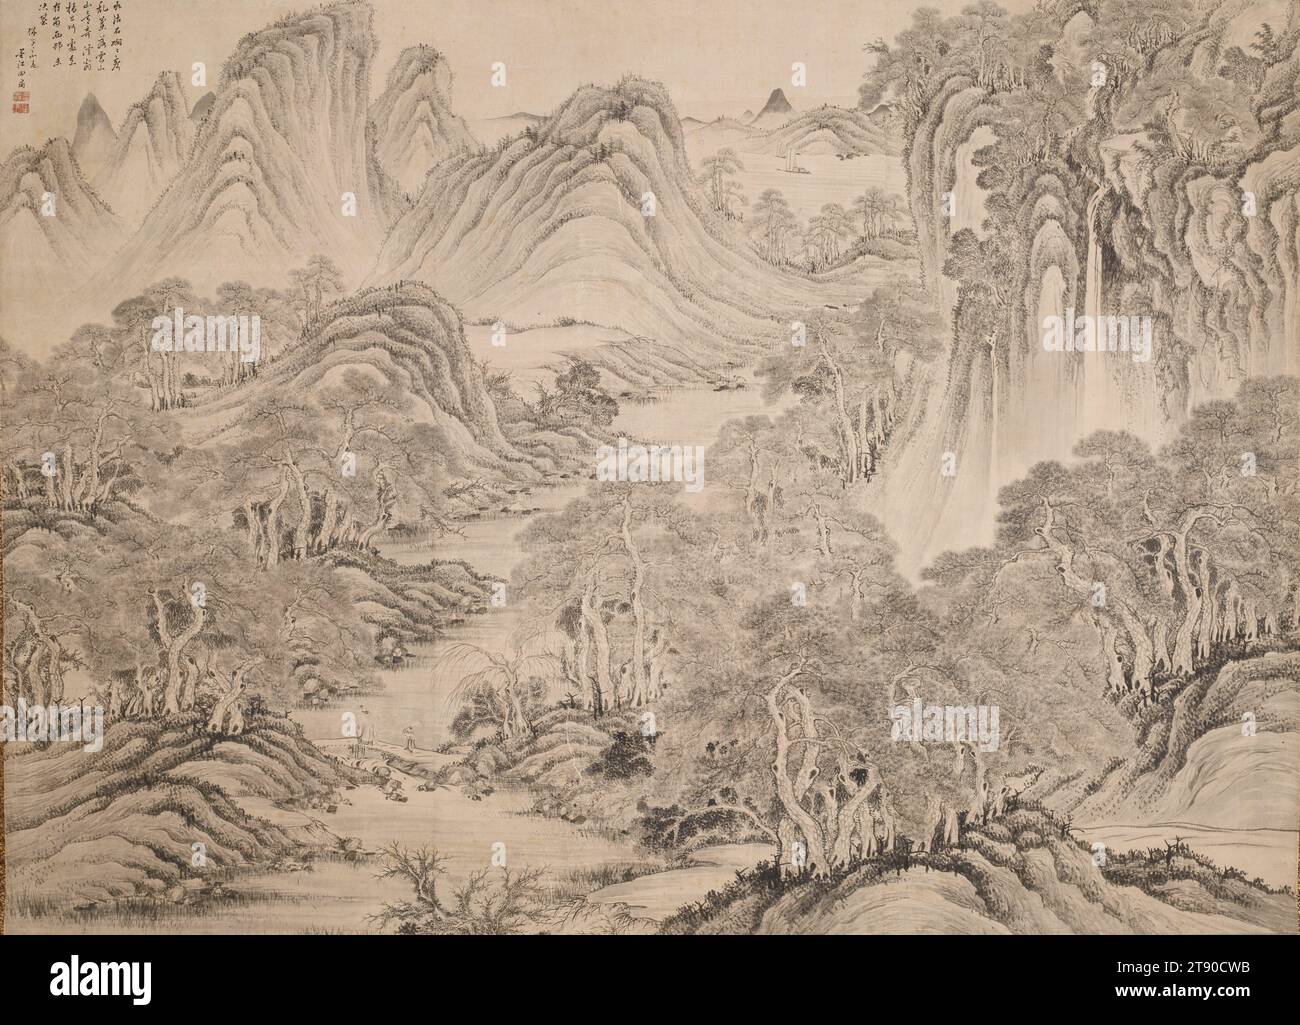 Paesaggio dopo le quattro Wangs, Inverno 1840, Okada Hankō, Giapponese, 1782 - 1846, 51 1/8 x 70 1/2 poll. (129,86 x 179,07 cm) (immagine)80 1/4 x 72" (203,84 x 182,88 cm) (Mount), Ink on paper, Japan, XIX secolo, l'opera monumentale di Okada Hankō è un tour de force nello spirito delle quattro Wangs, un circolo di pittori cinesi conservatori che hanno creato interpretazioni stilizzate di opere classiche. Questo dipinto segue i principi ortodossi di composizione - il primo piano, il terreno di mezzo e lo sfondo sono distinti ma ben integrati - mantenendo l'ordine in questo ambiente altrimenti fantastico e complesso Foto Stock